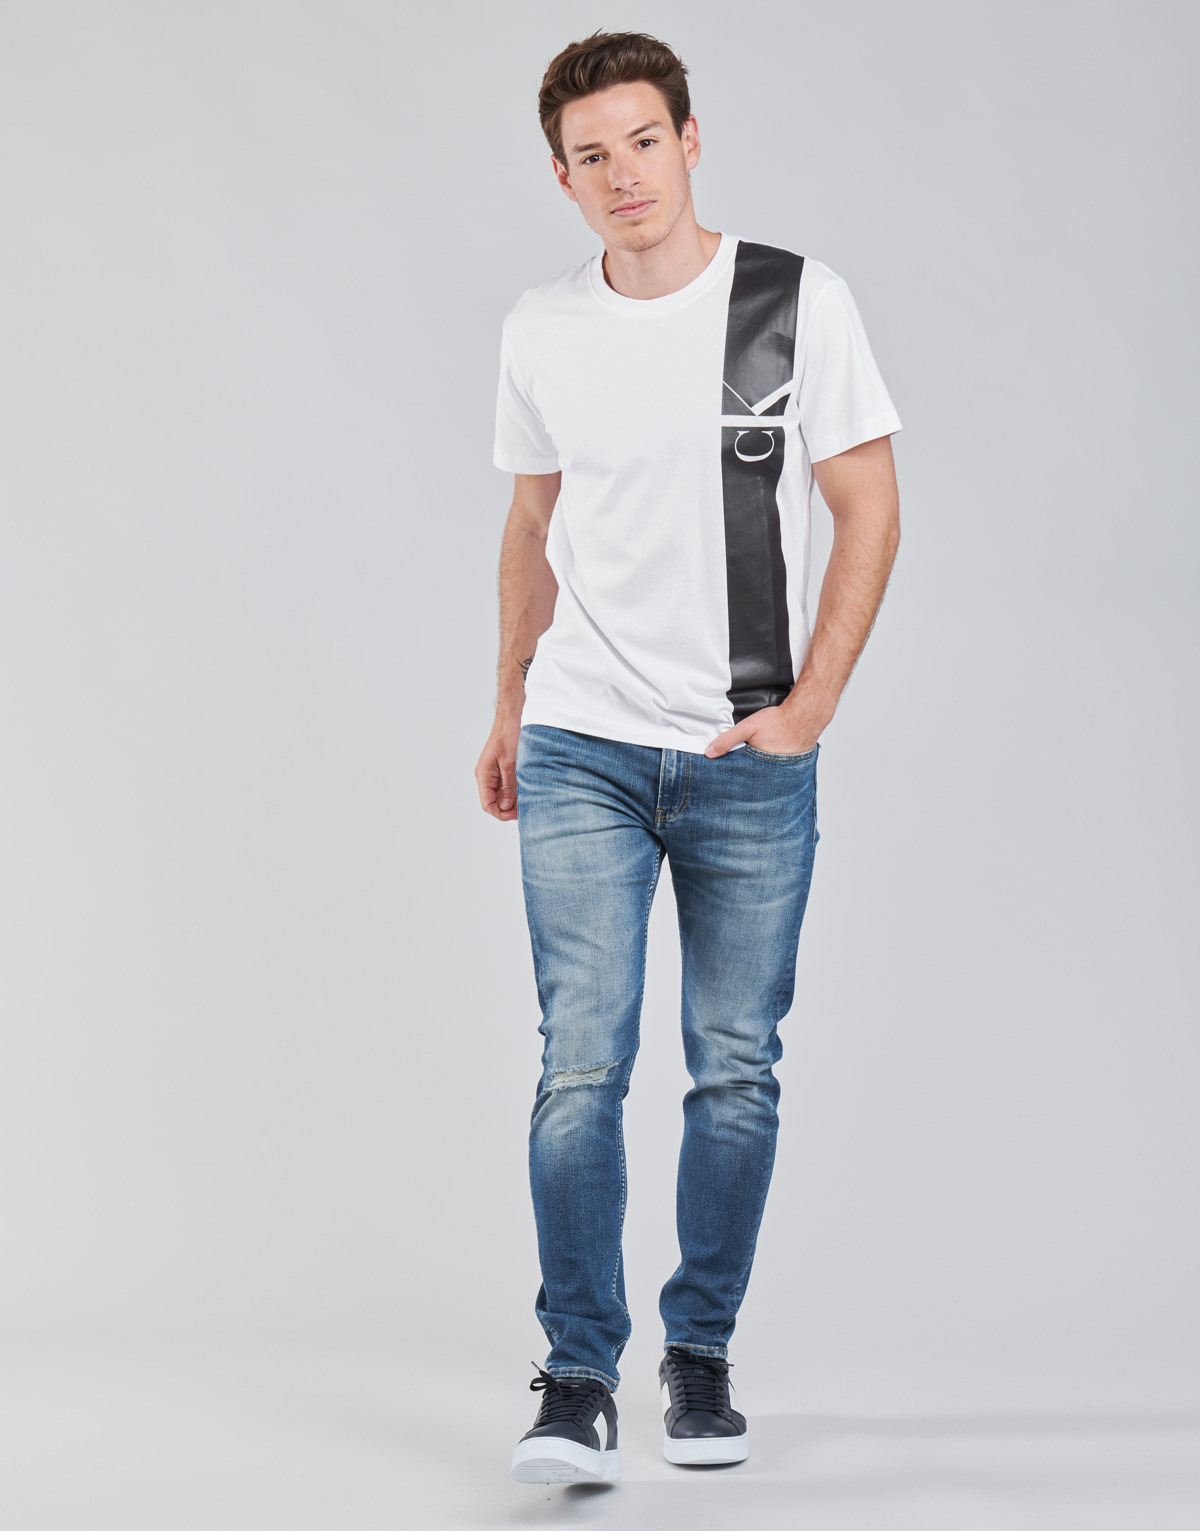 Vêtements Homme Kläder för pojkar för Barn från Calvin Klein Kids SLIM TAPER Bleu Medium